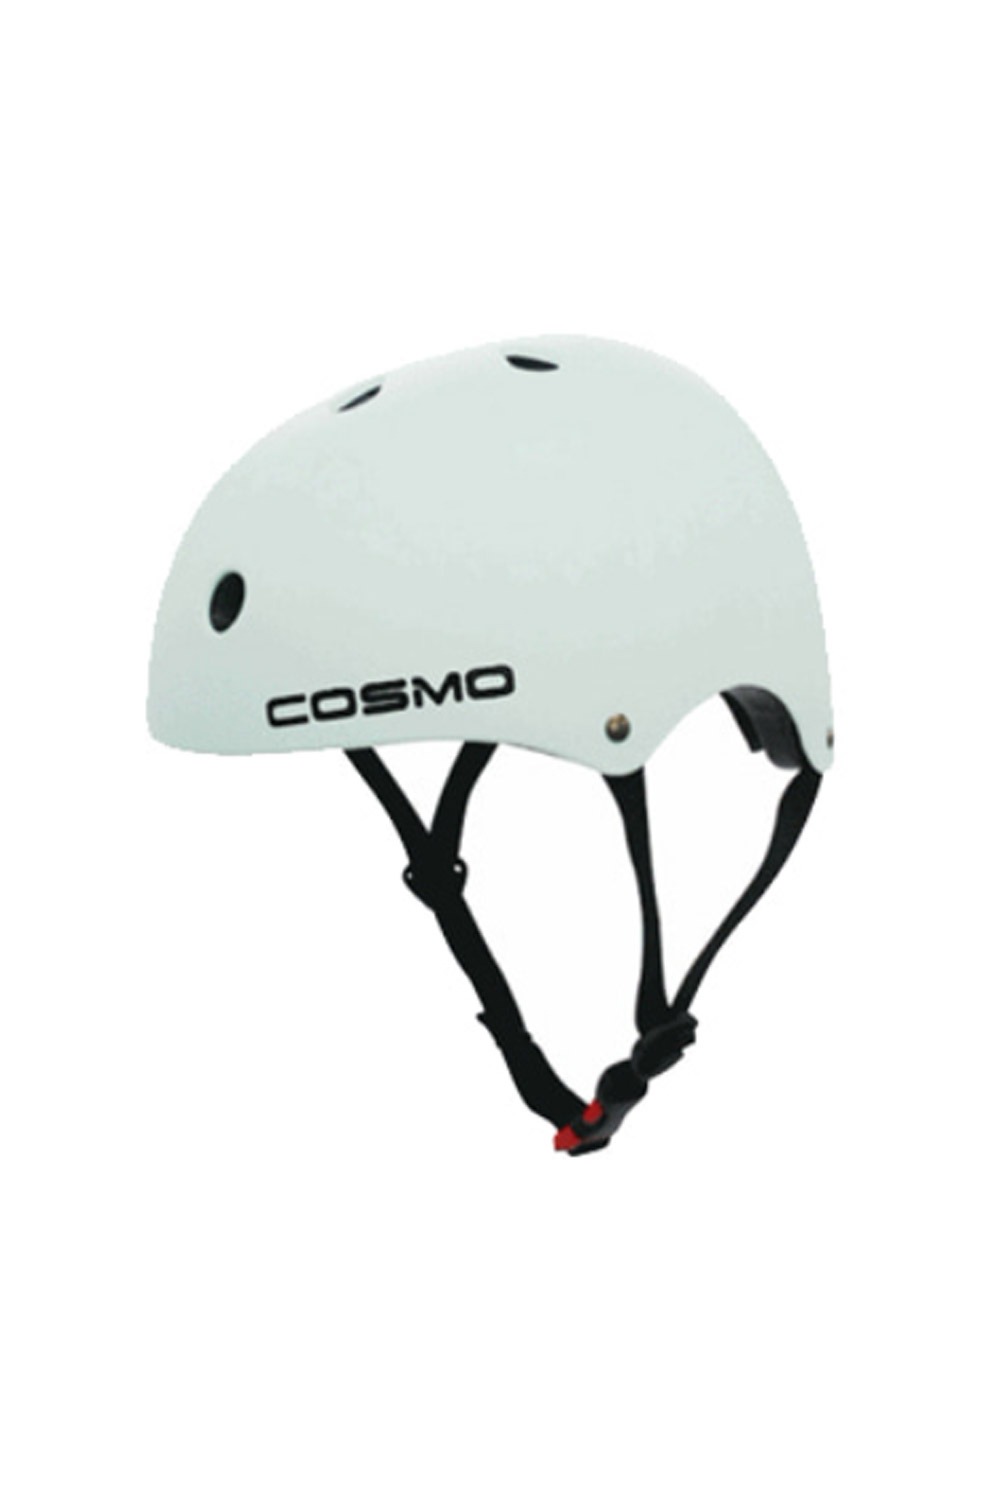 코즈모 헬멧 (롱보드/스케이트보드/BMX/인라인)_COSMO_SKATEBOARD HELMET_WHITE_FC8001WH_ZFC8001WH